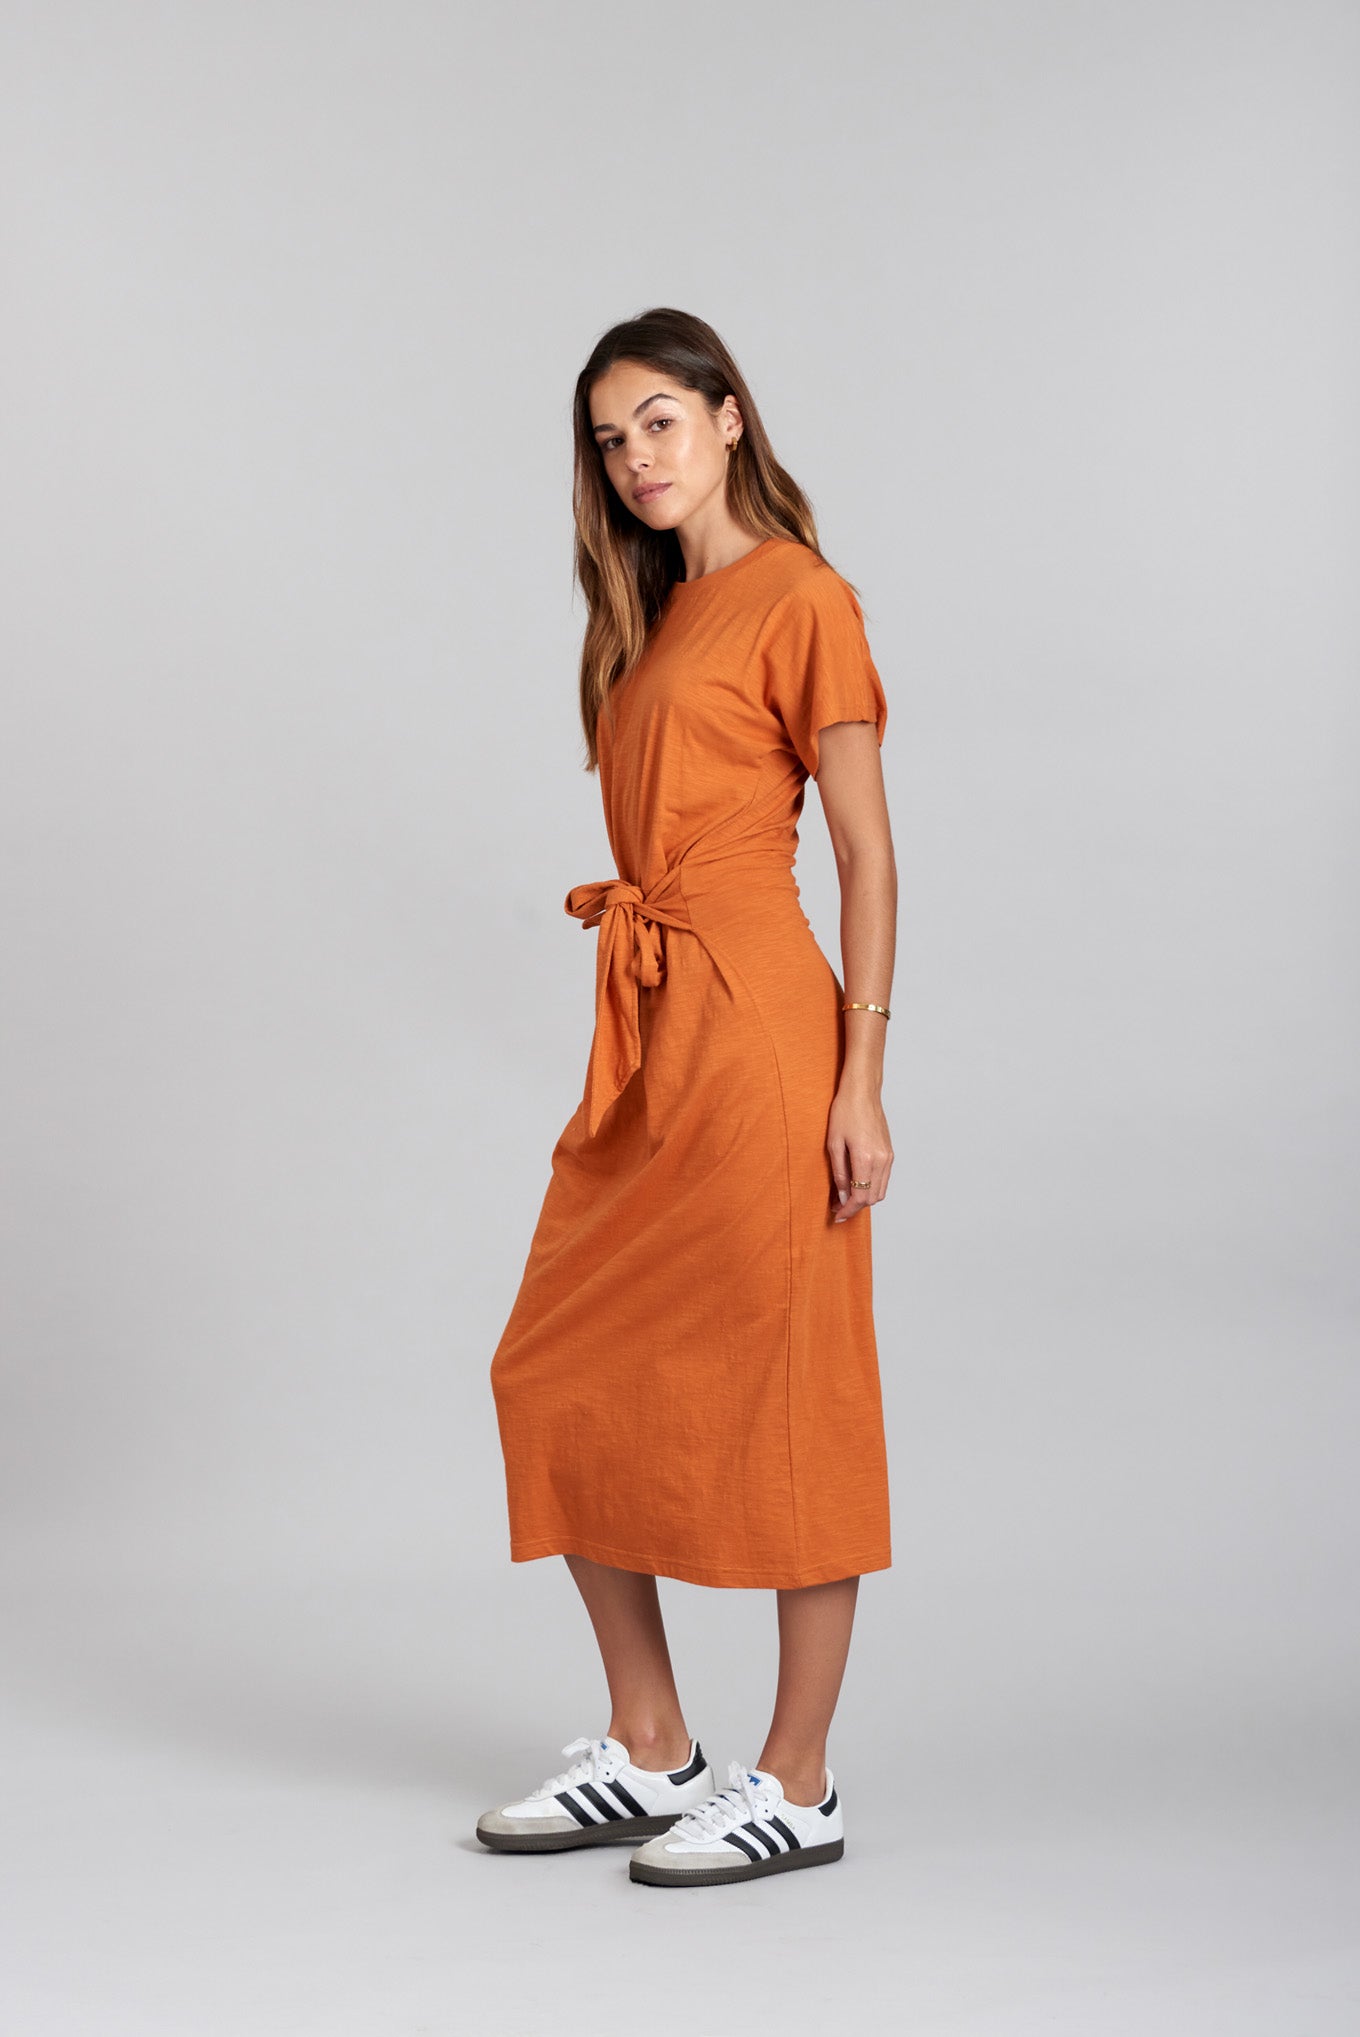 Oranges Kleid FONDA aus 100% Bio-Baumwolle von Komodo